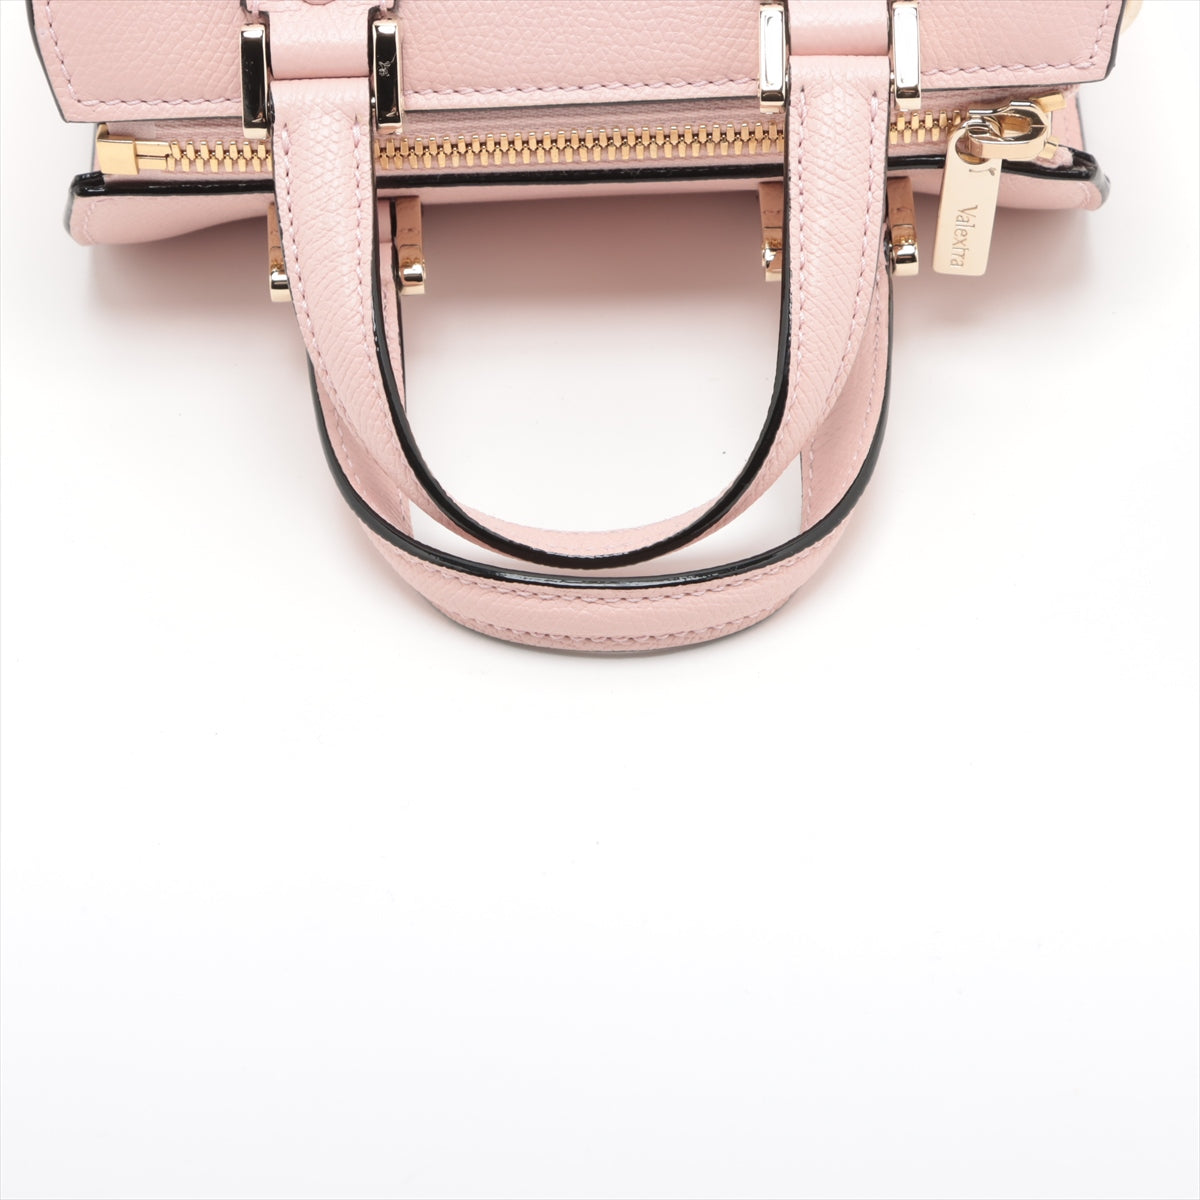 Valextra Leather 2way shoulder bag Pink